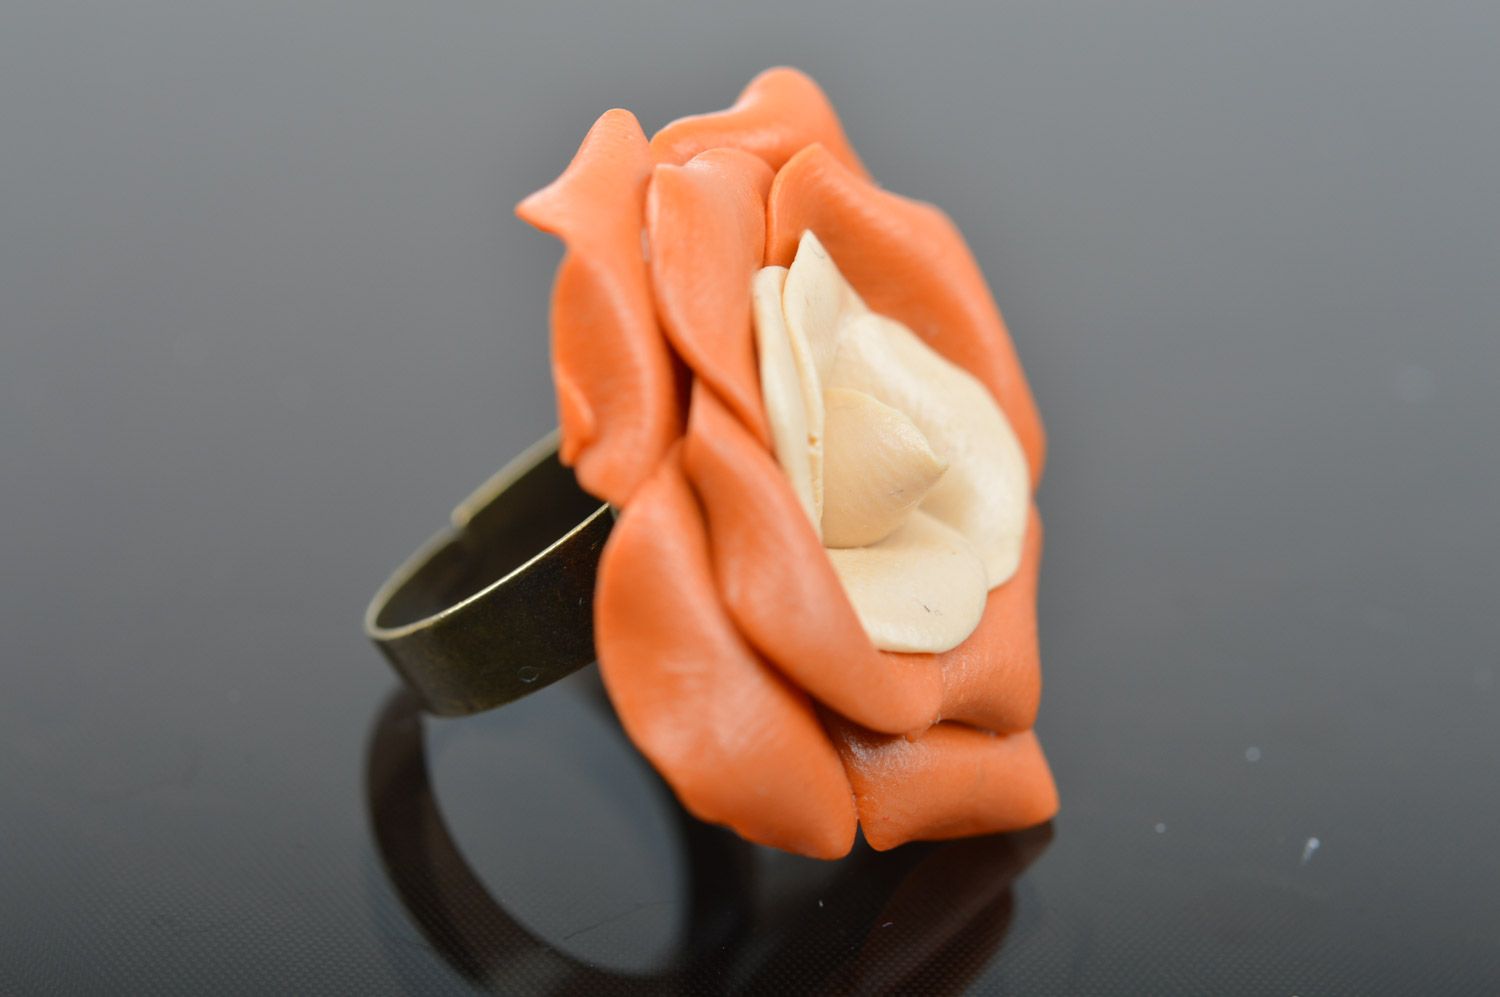 Homemade orange plastic flower ring for girls photo 5